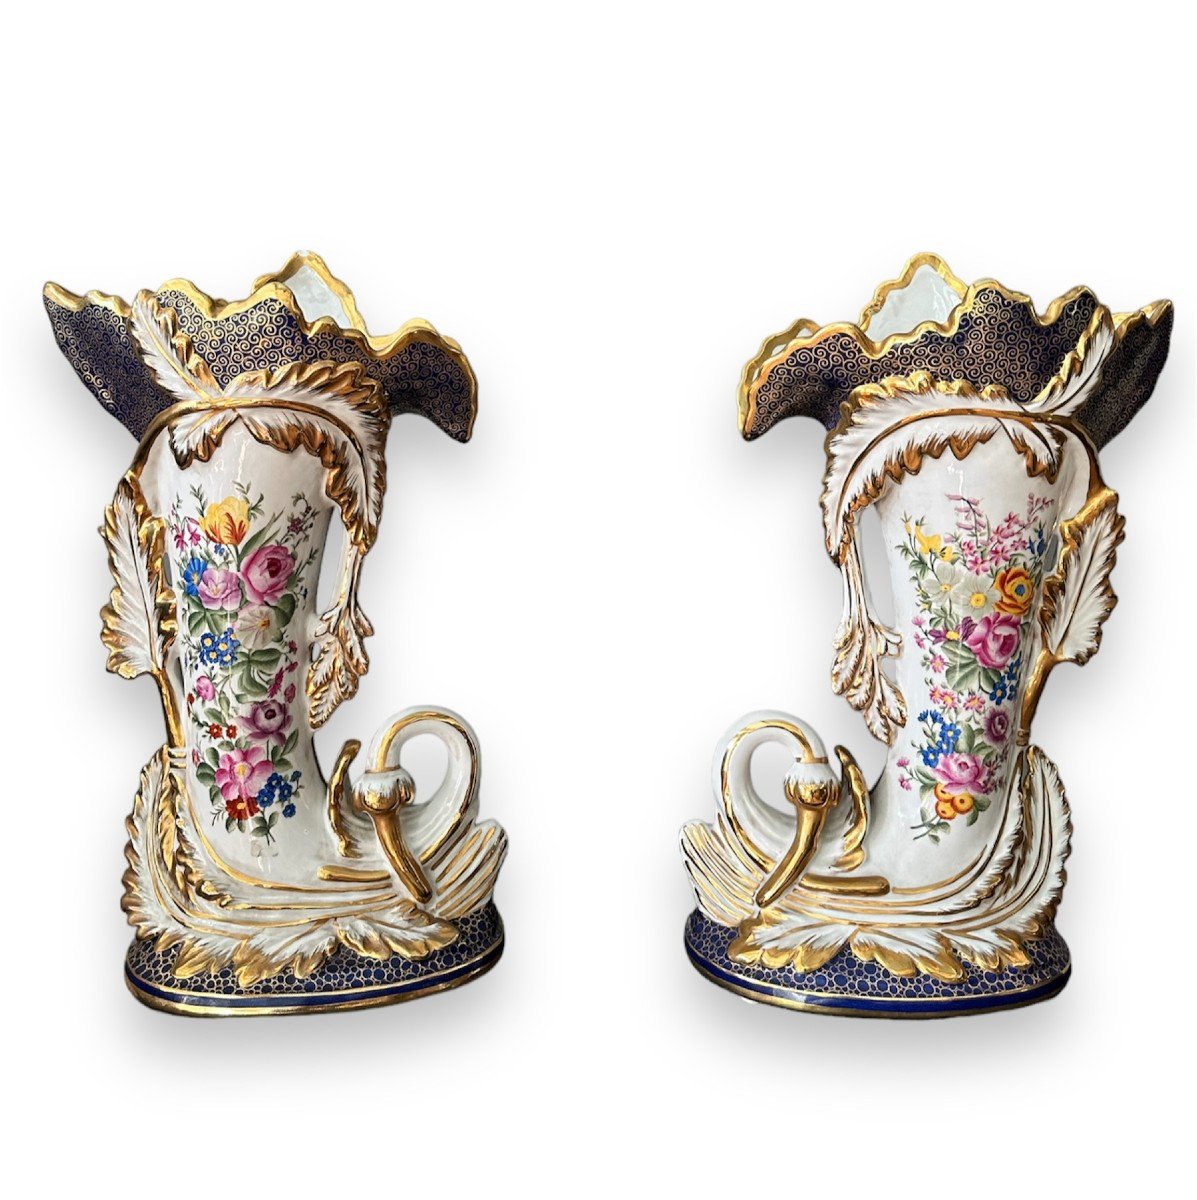 20th Century, Pair Of Porcelain Vases With Cornucopia